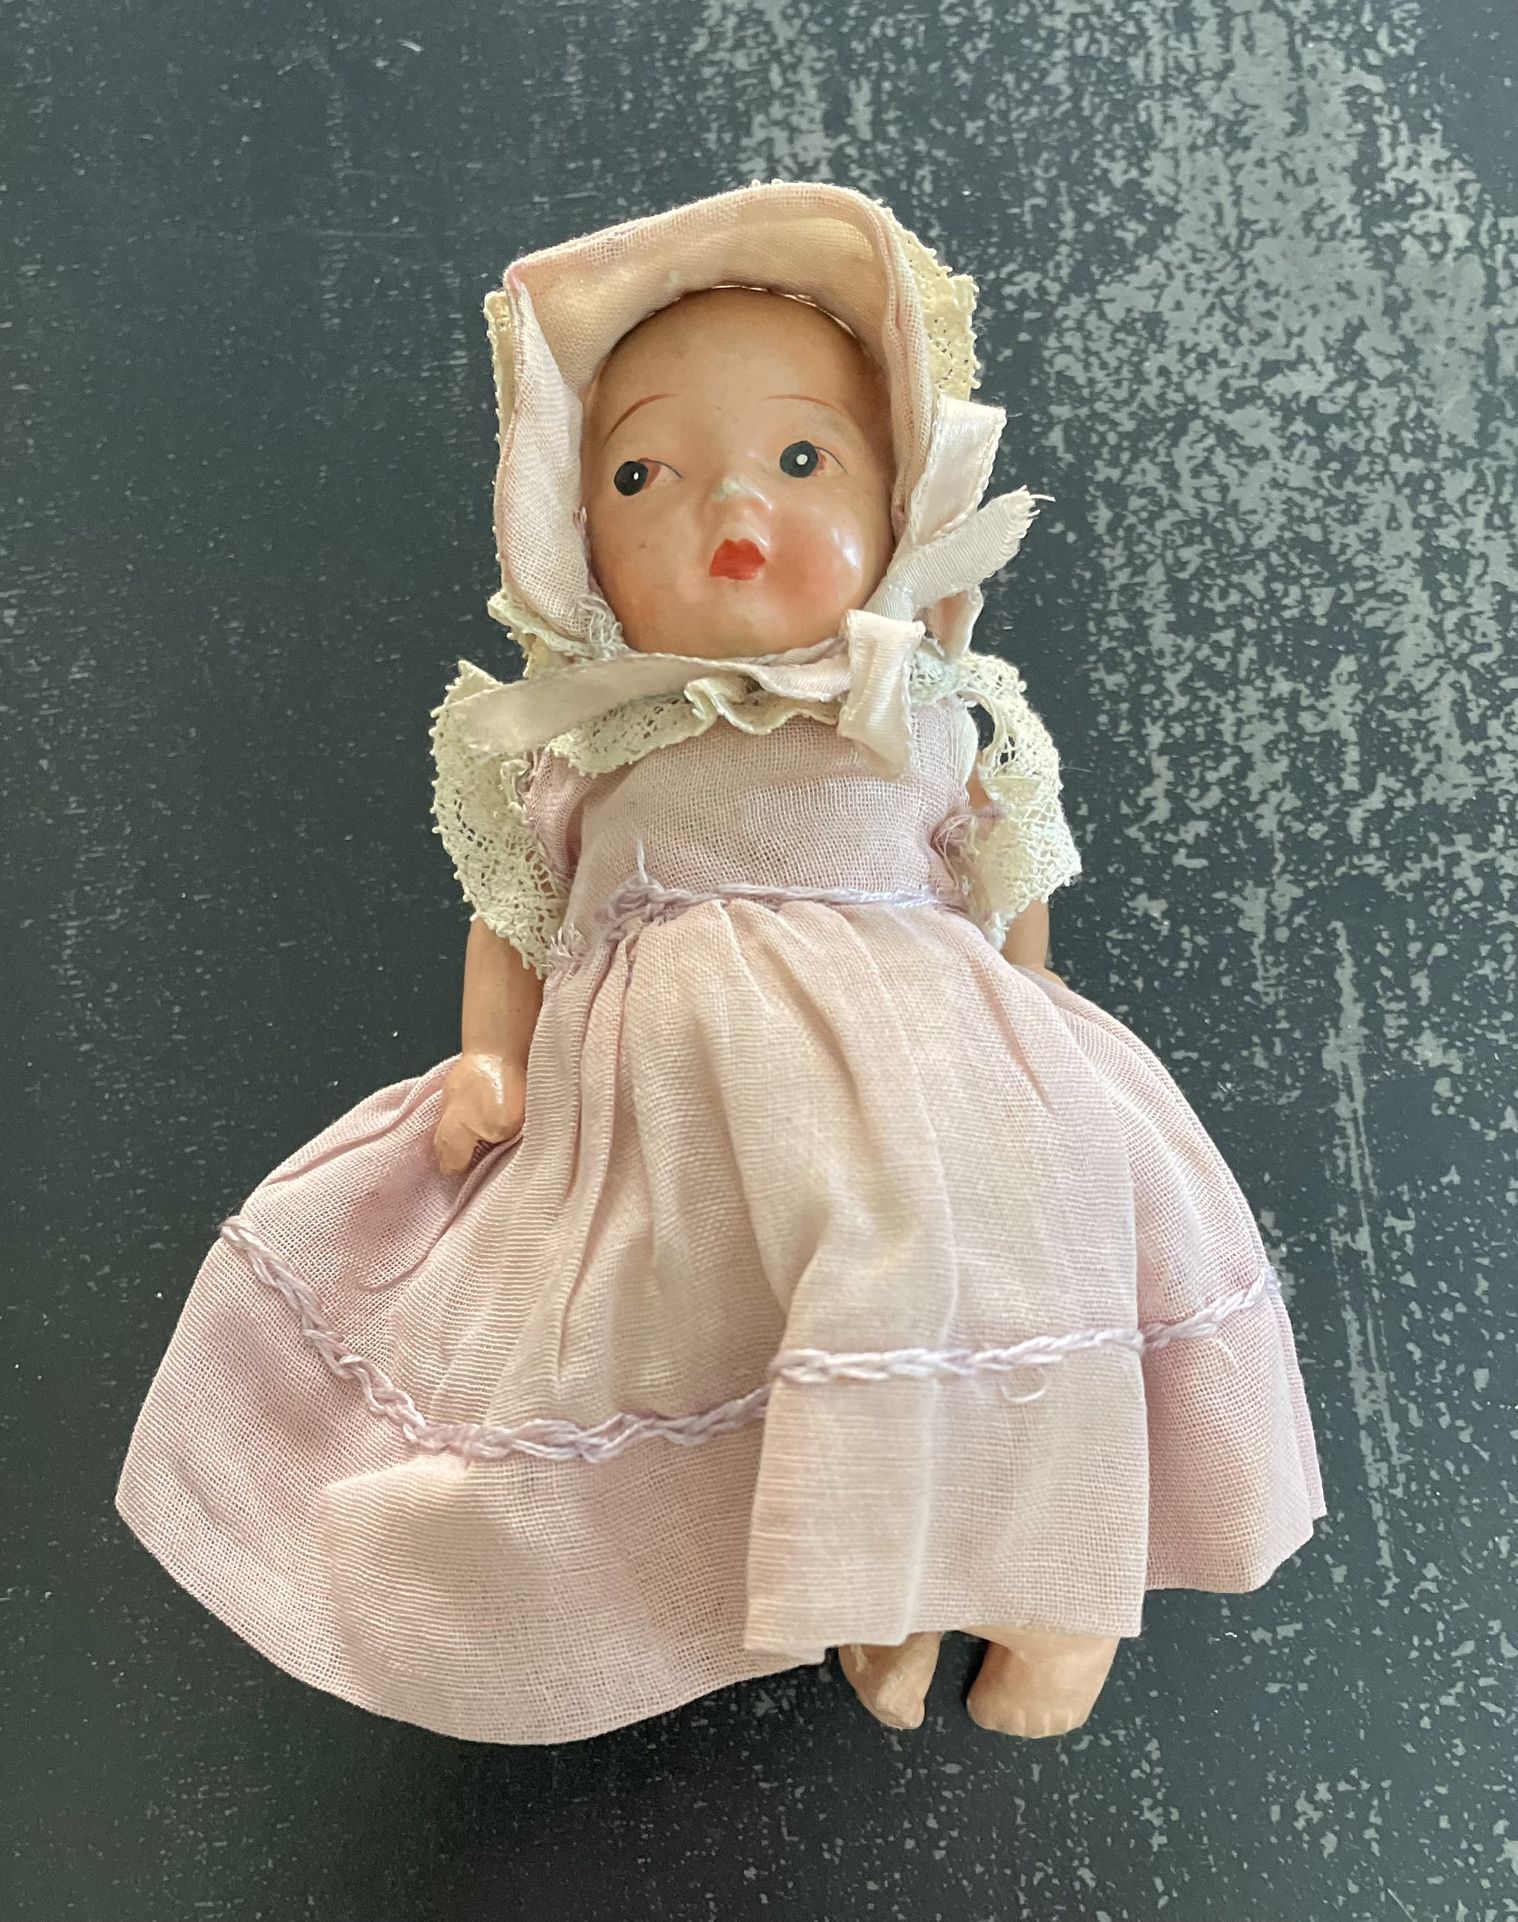 5” Vintage China Doll Circa 1948